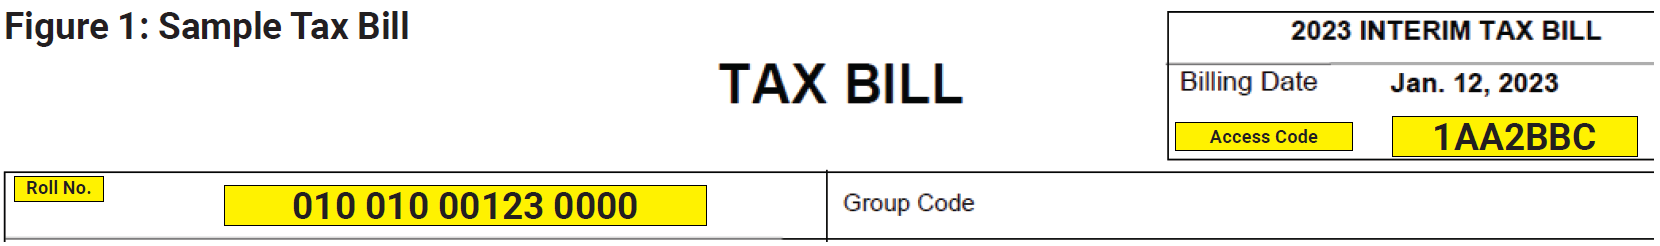 Sample Tax Bill